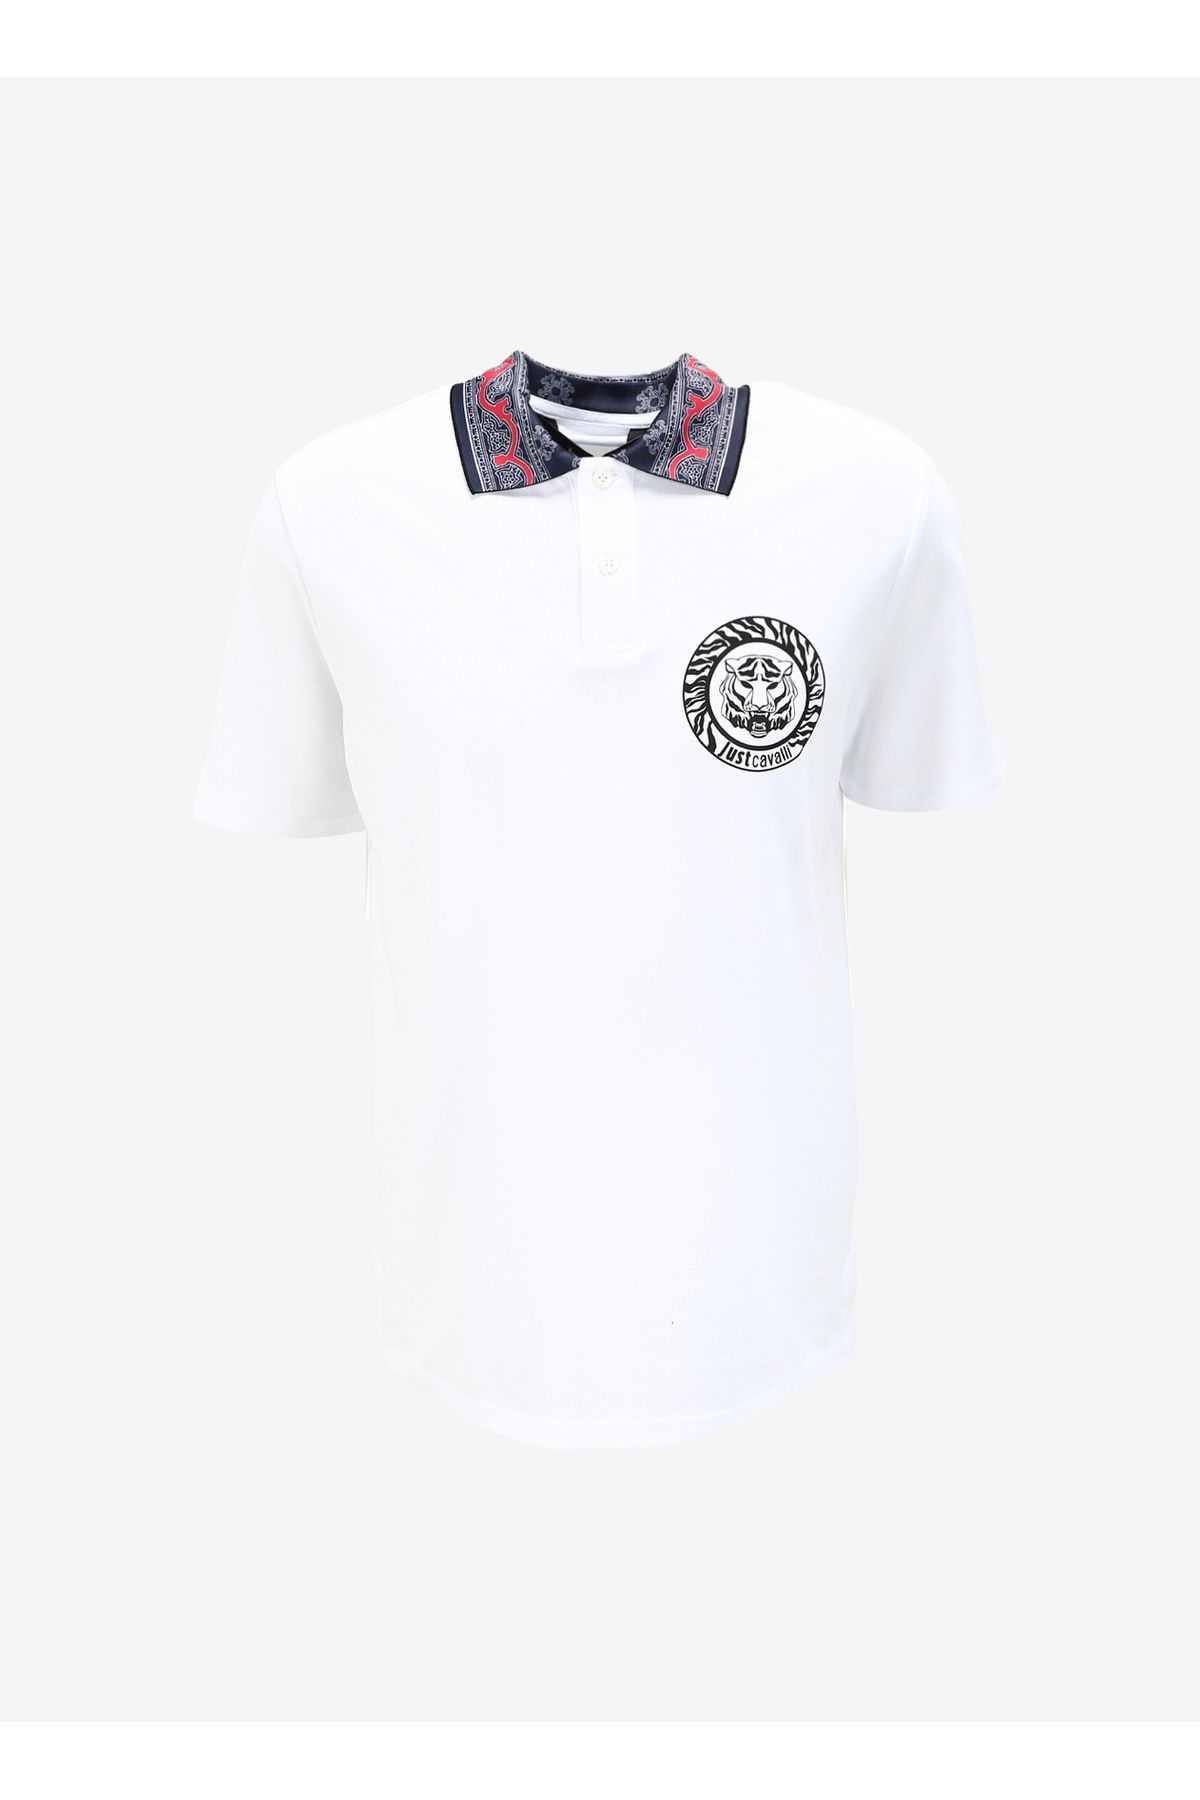 Just Cavalli Beyaz Erkek Polo T-shirt 75oagt02